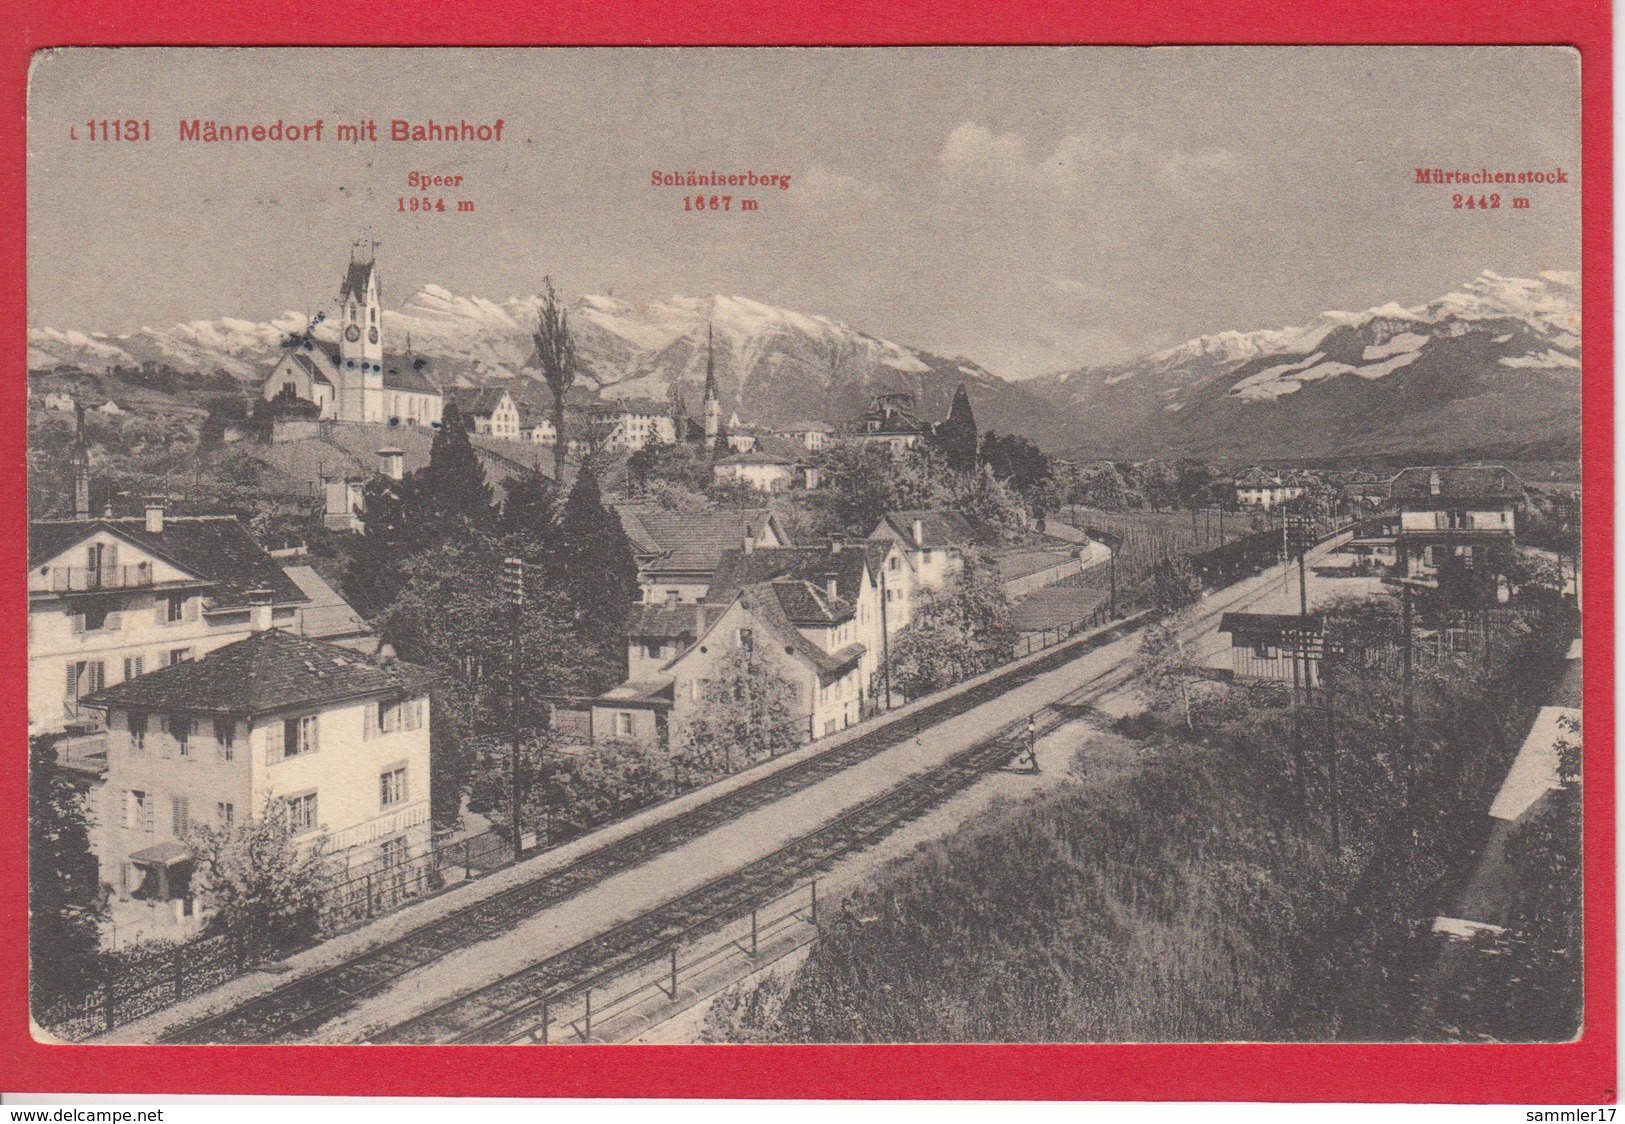 MÄNNEDORF MIT BAHNHOF, 1911 - Dorf